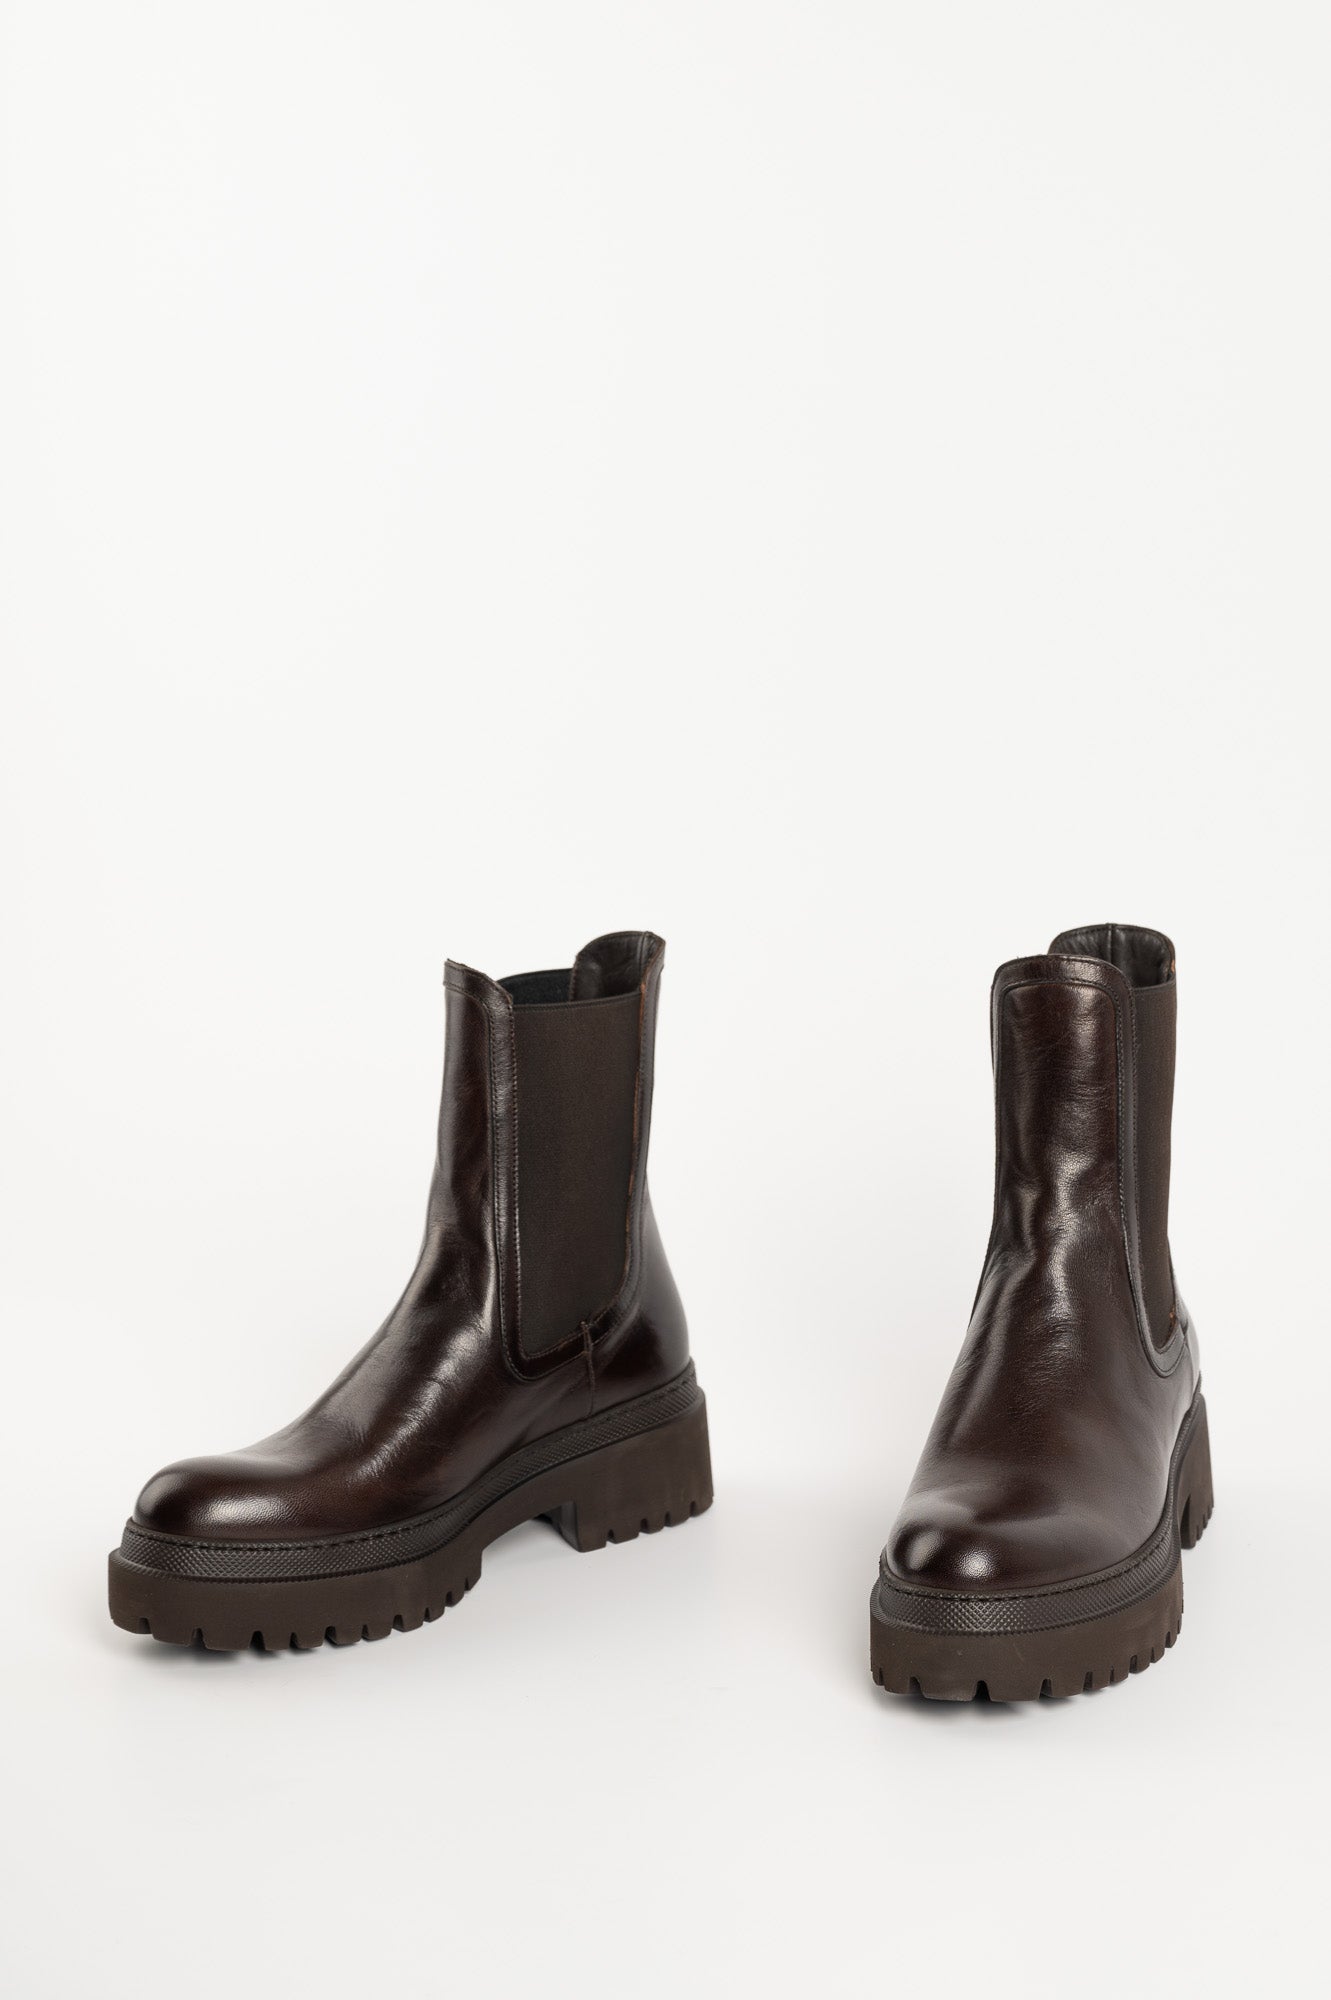 Boot Stim 691 | Dark Brown Leather